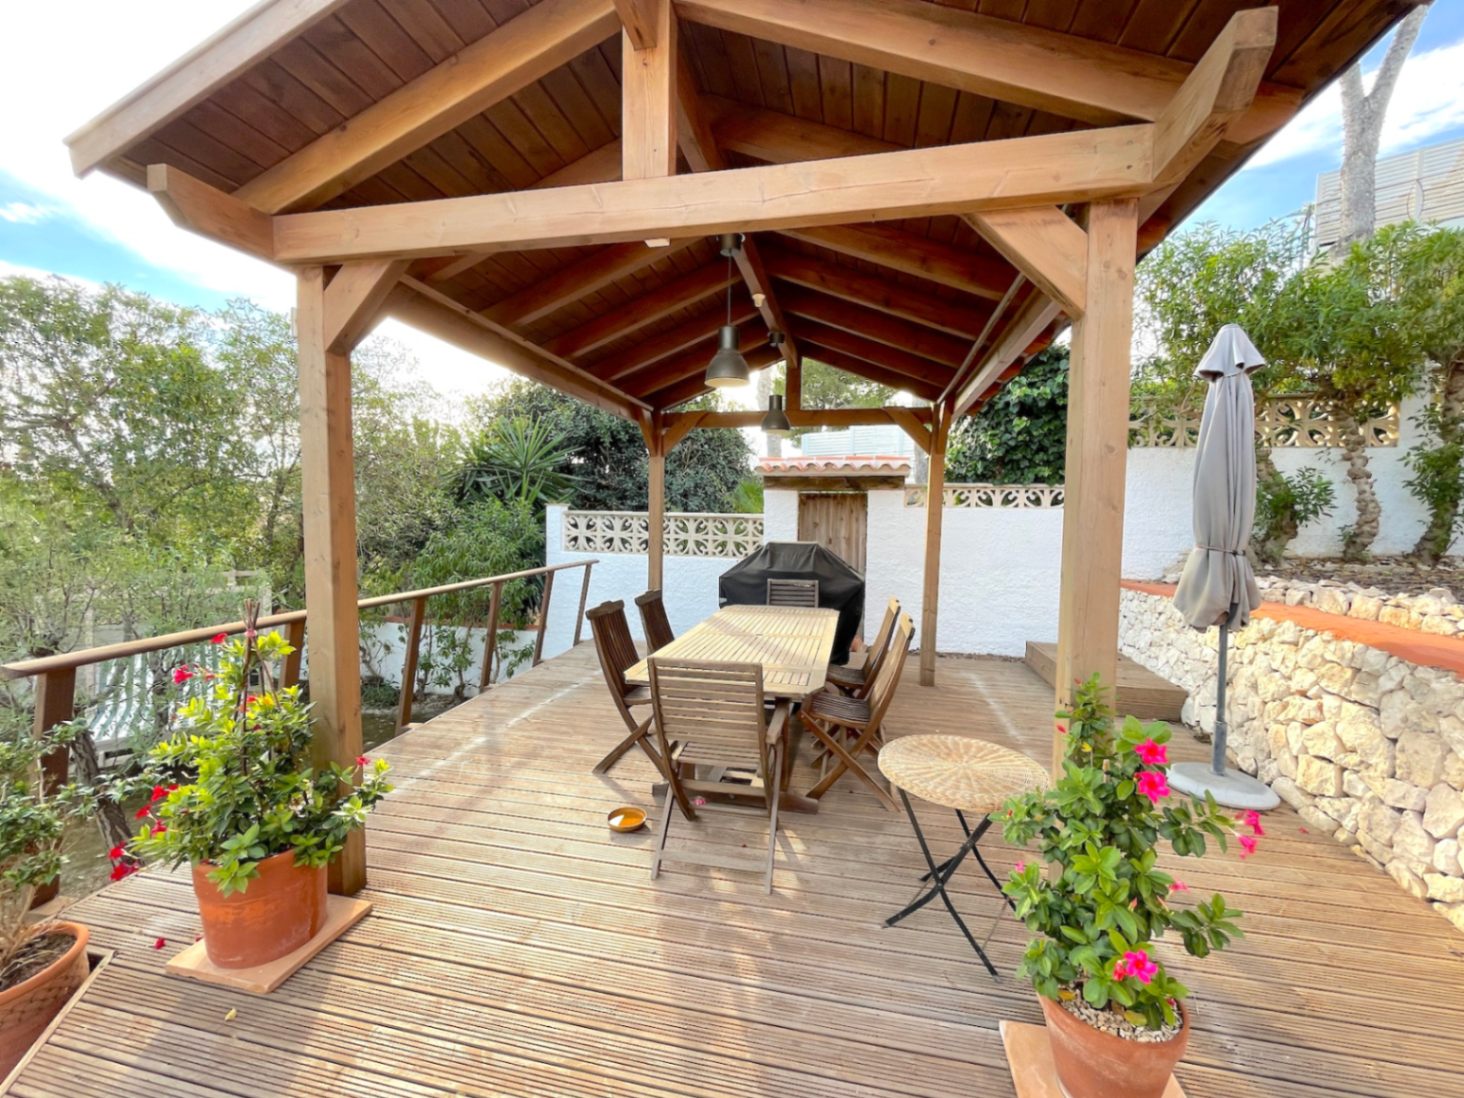 Property for sale: 5 bed villa in Fanadix | Moraira